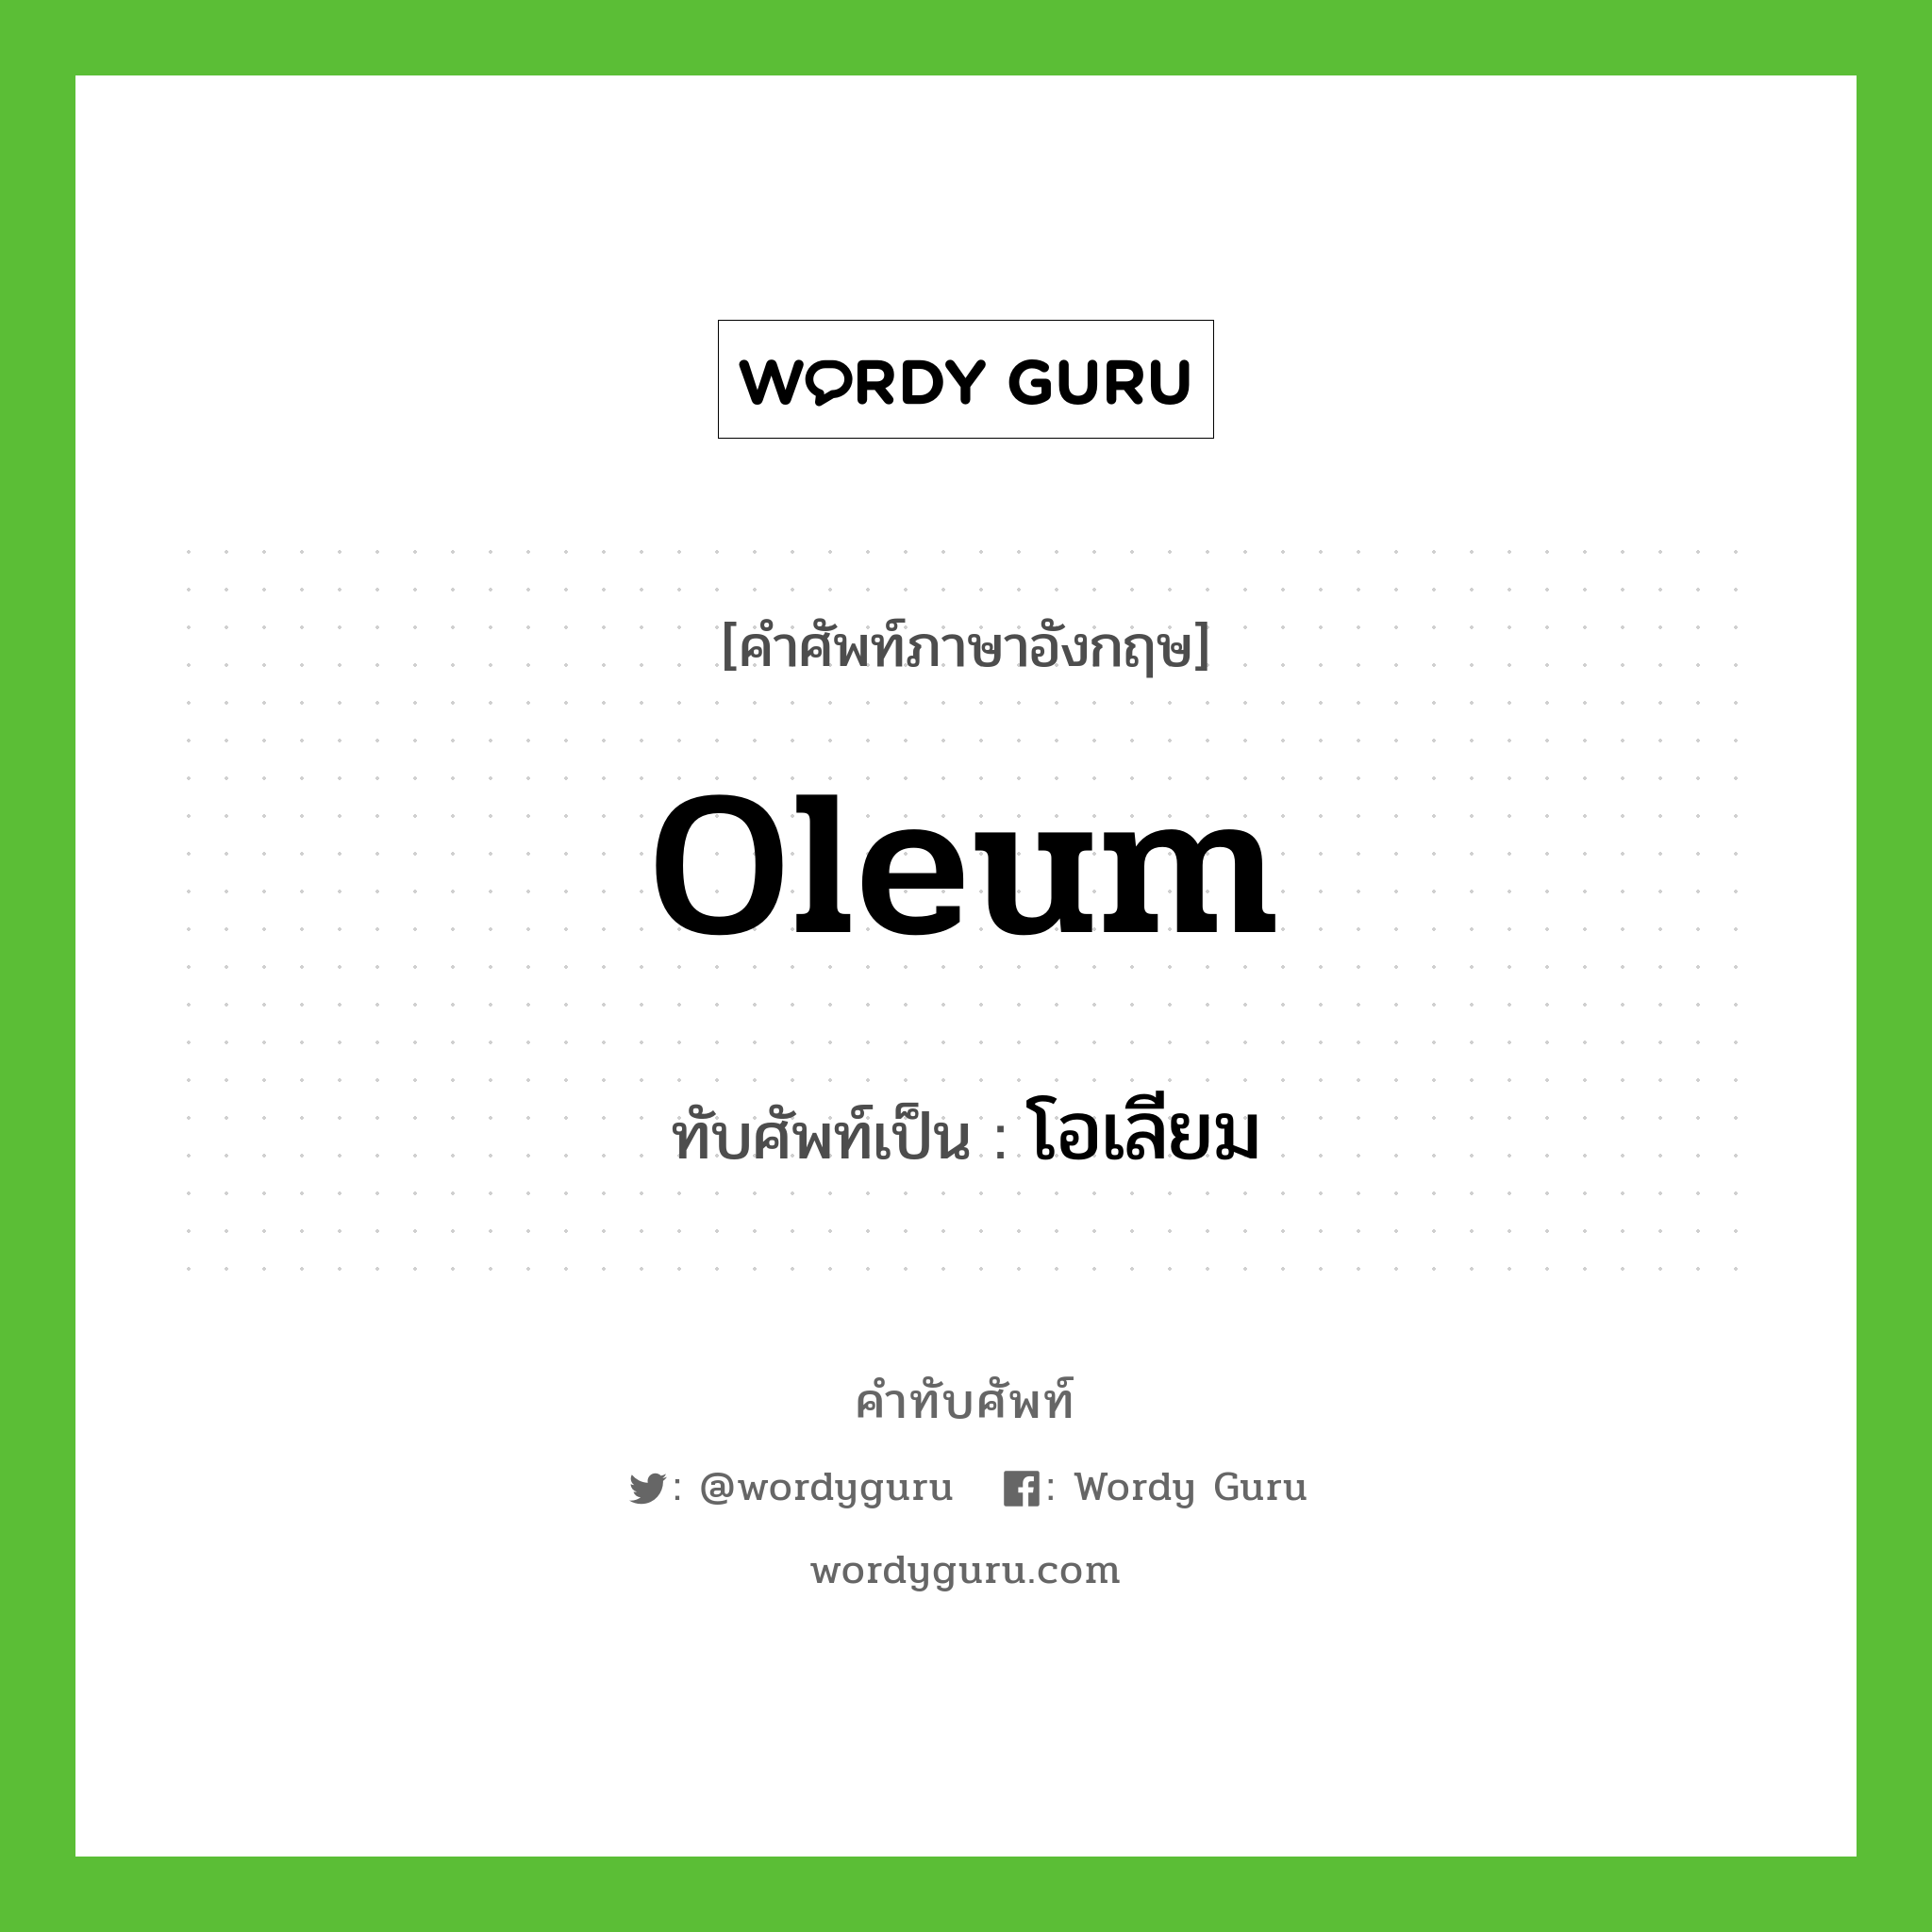 oleum เขียนเป็นคำไทยว่าอะไร?, คำศัพท์ภาษาอังกฤษ oleum ทับศัพท์เป็น โอเลียม